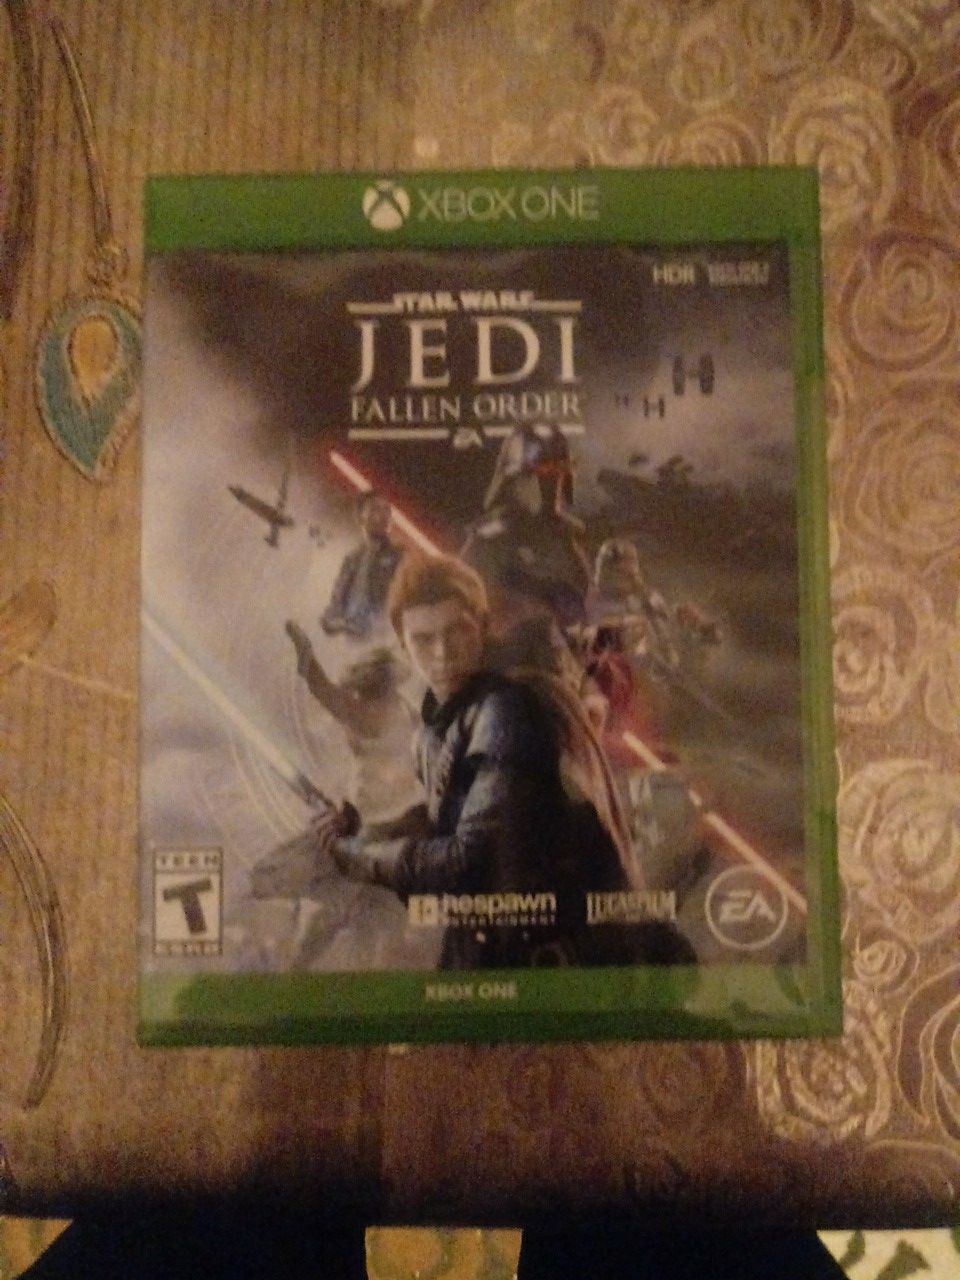 Star Wars Jedi Fallen Order( Xbox one) game